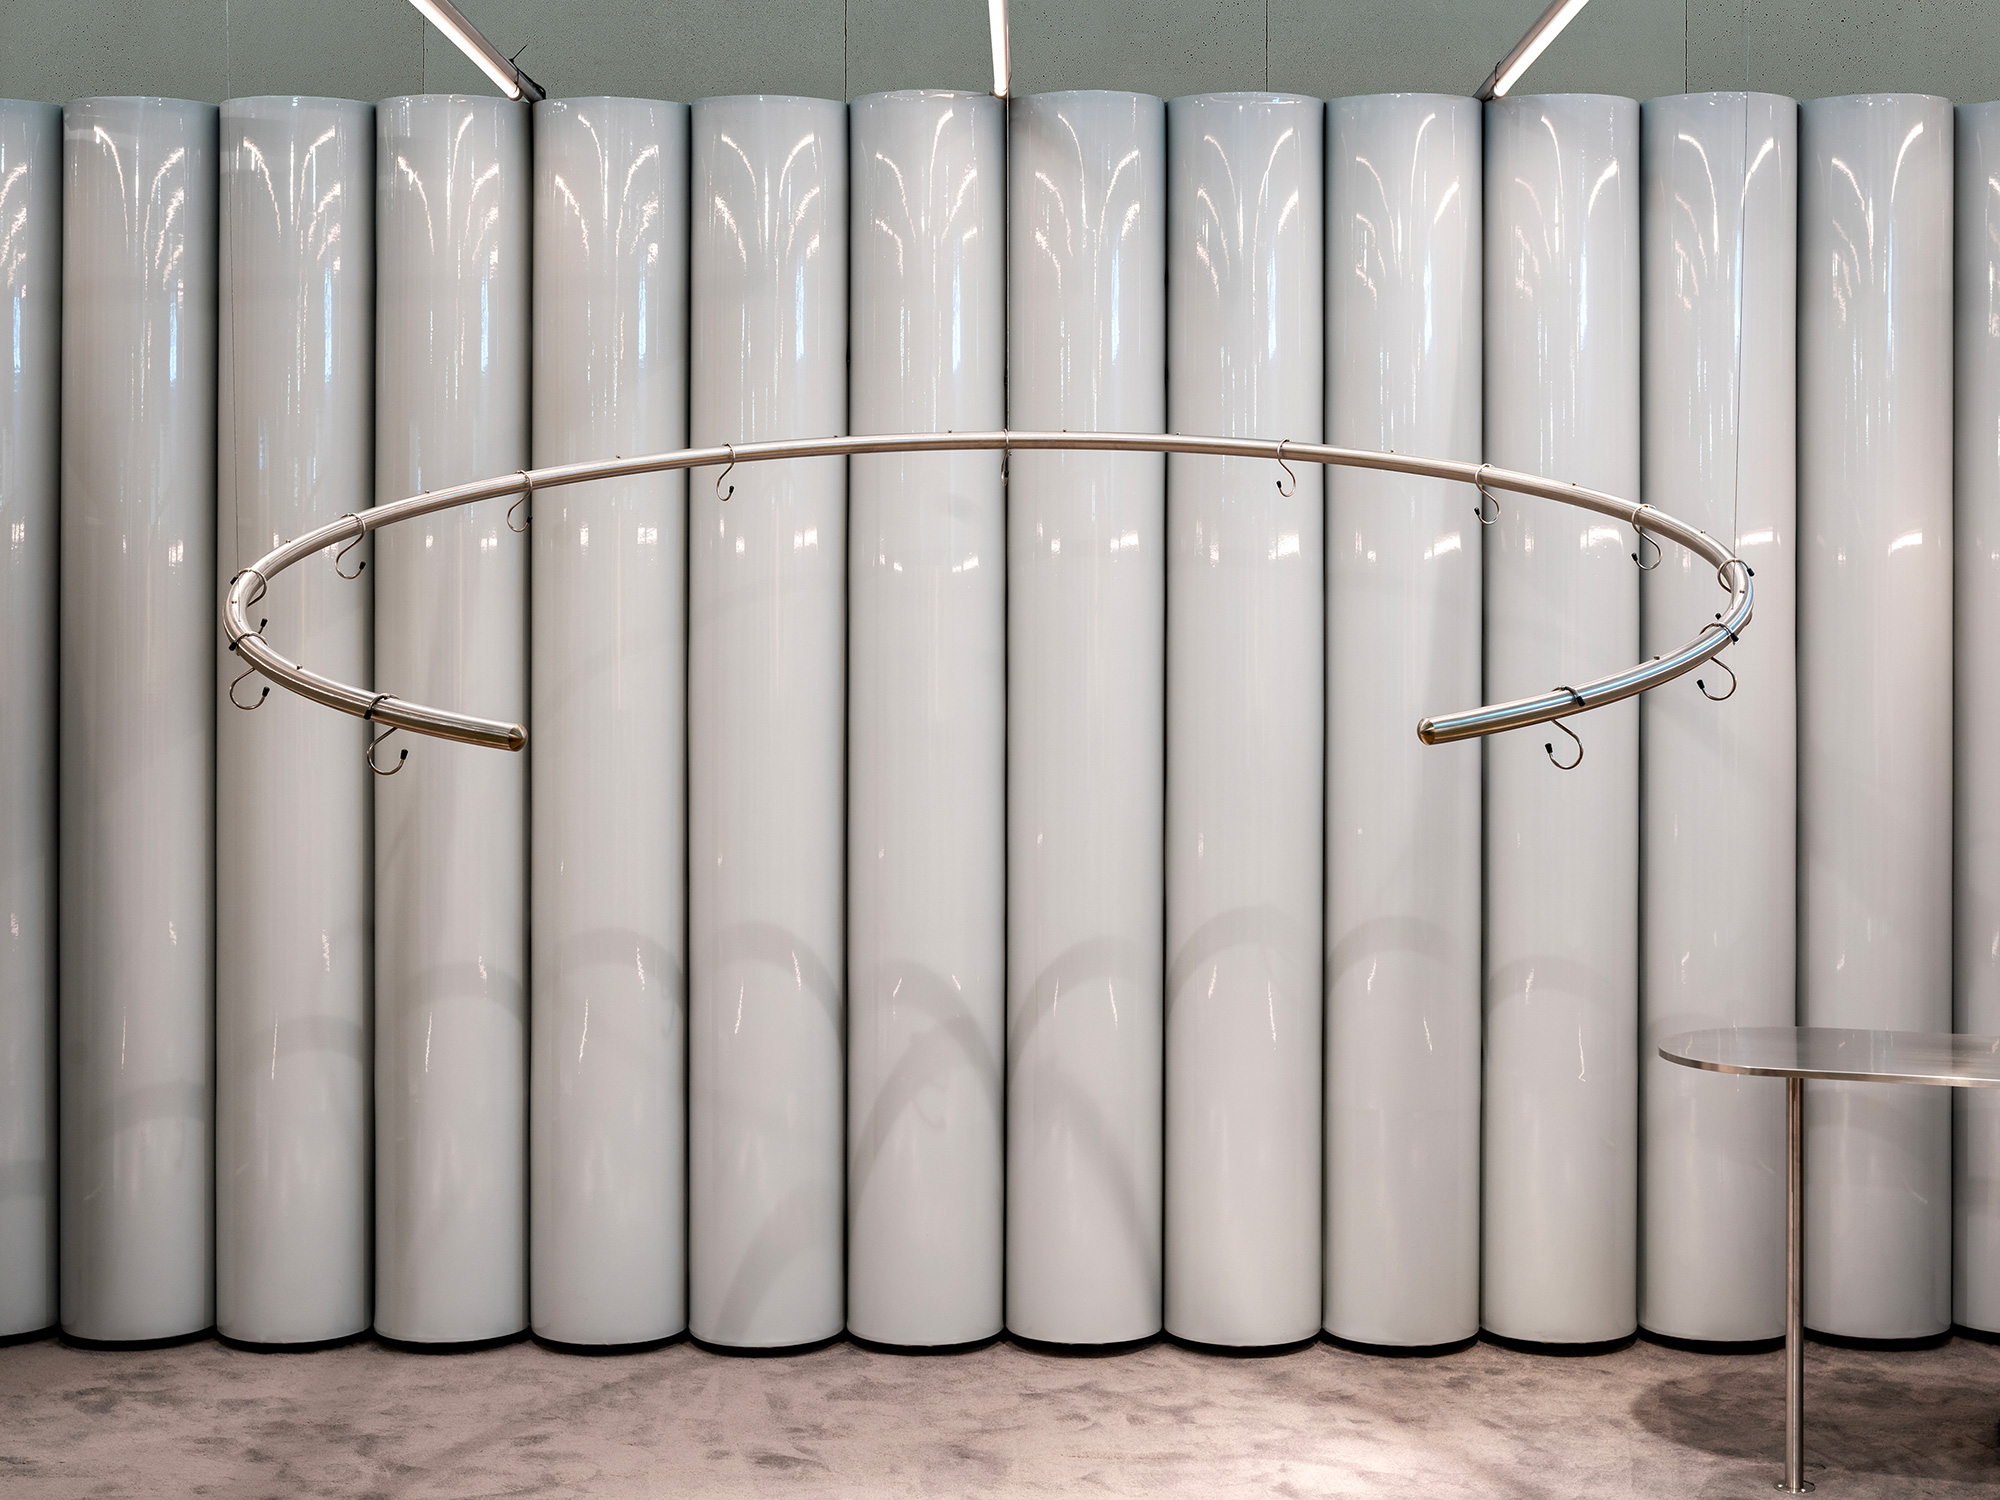 Valstar installation mirror milan interior studioboom architetti